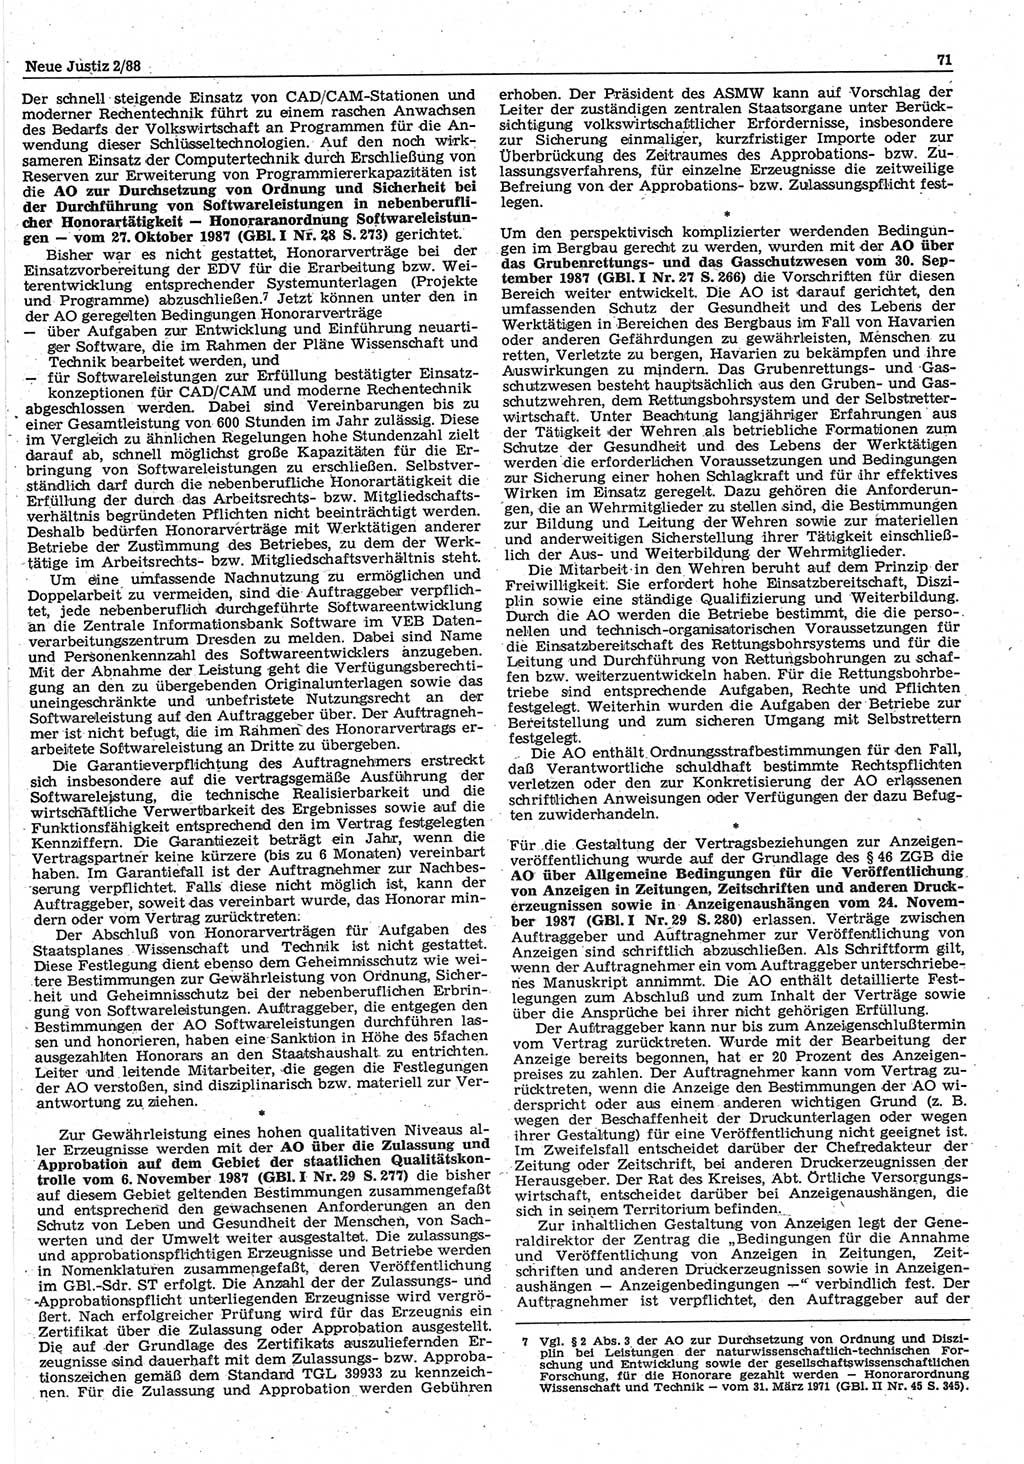 Neue Justiz (NJ), Zeitschrift für sozialistisches Recht und Gesetzlichkeit [Deutsche Demokratische Republik (DDR)], 42. Jahrgang 1988, Seite 71 (NJ DDR 1988, S. 71)